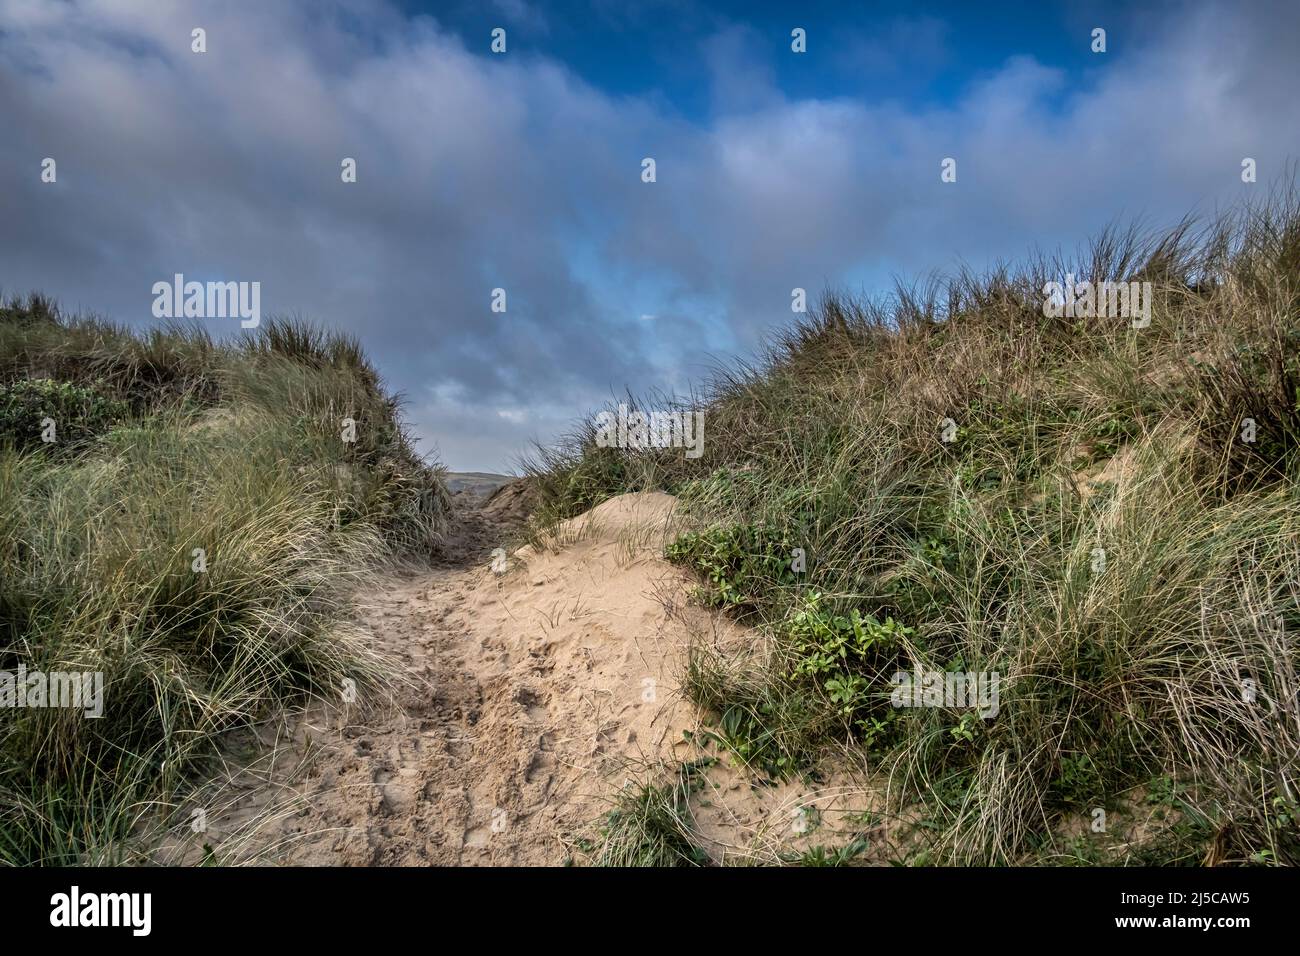 Les dommages graves causés par l'activité humaine au système fragile de dunes de sable délicates de Crantock Beach, à Newquay, en Cornouailles. Banque D'Images